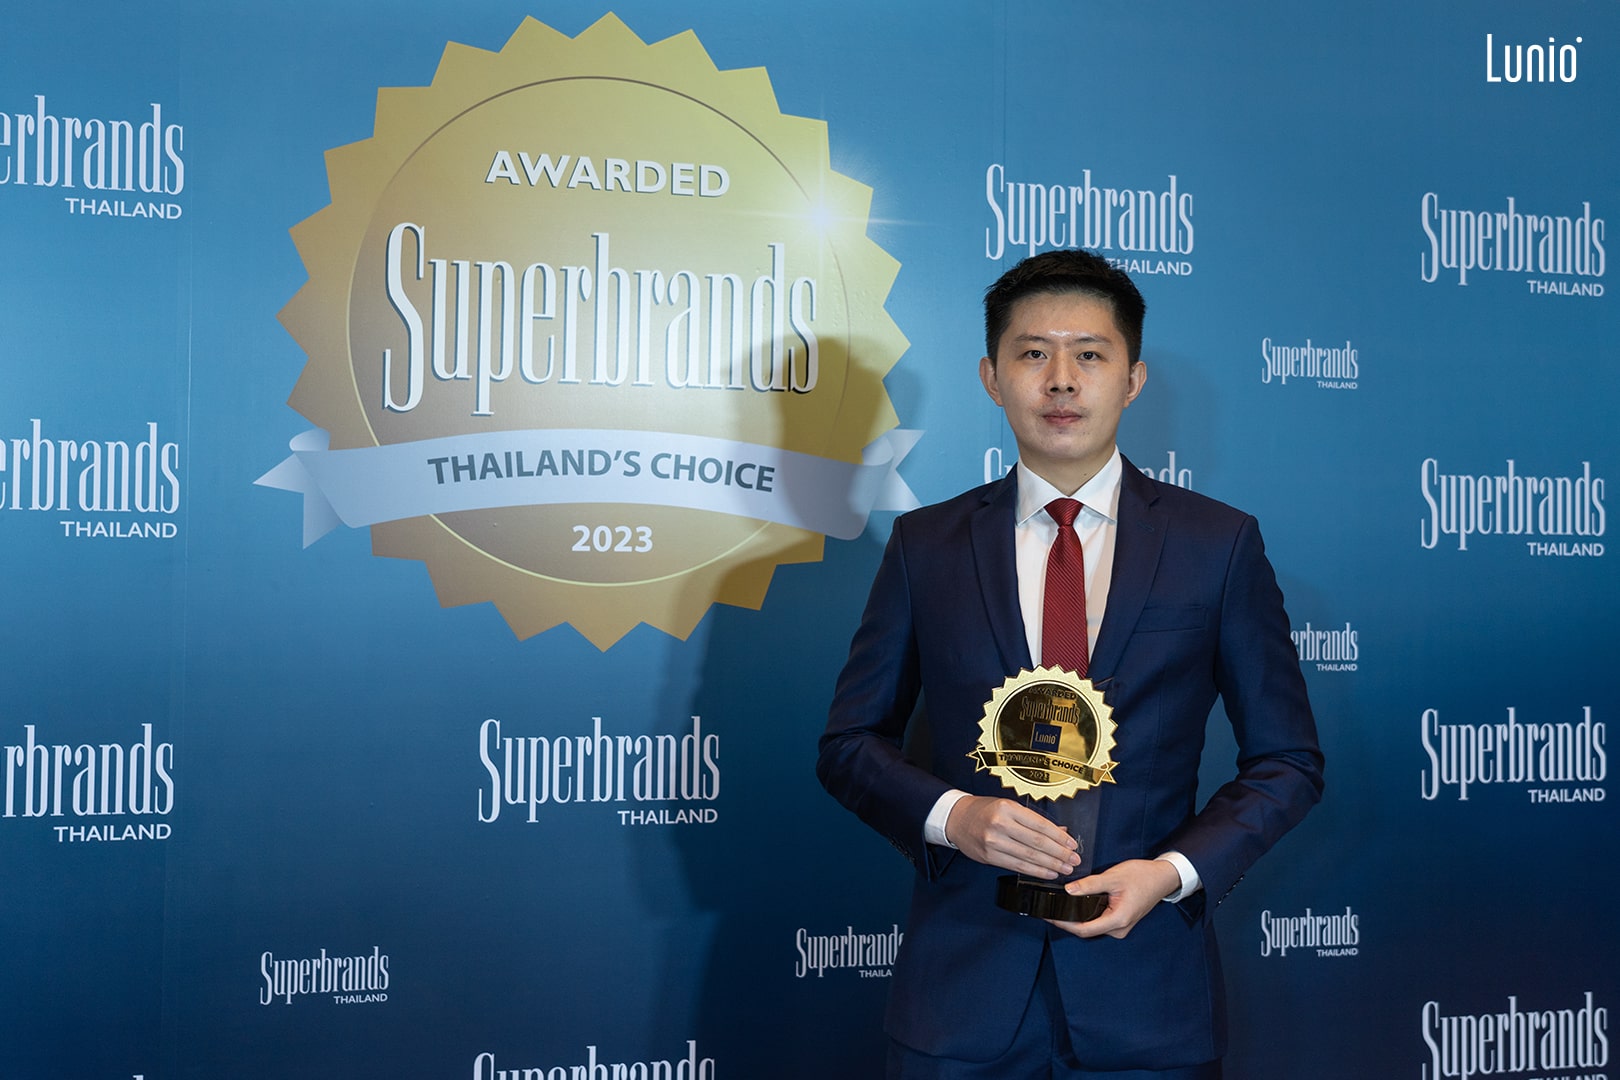 Lunio ตอกย้ำแบรนด์ที่นอนชั้นนำของประเทศไทย รับรางวัล Superbrands 2 ปีซ้อน ประจำปี 2023